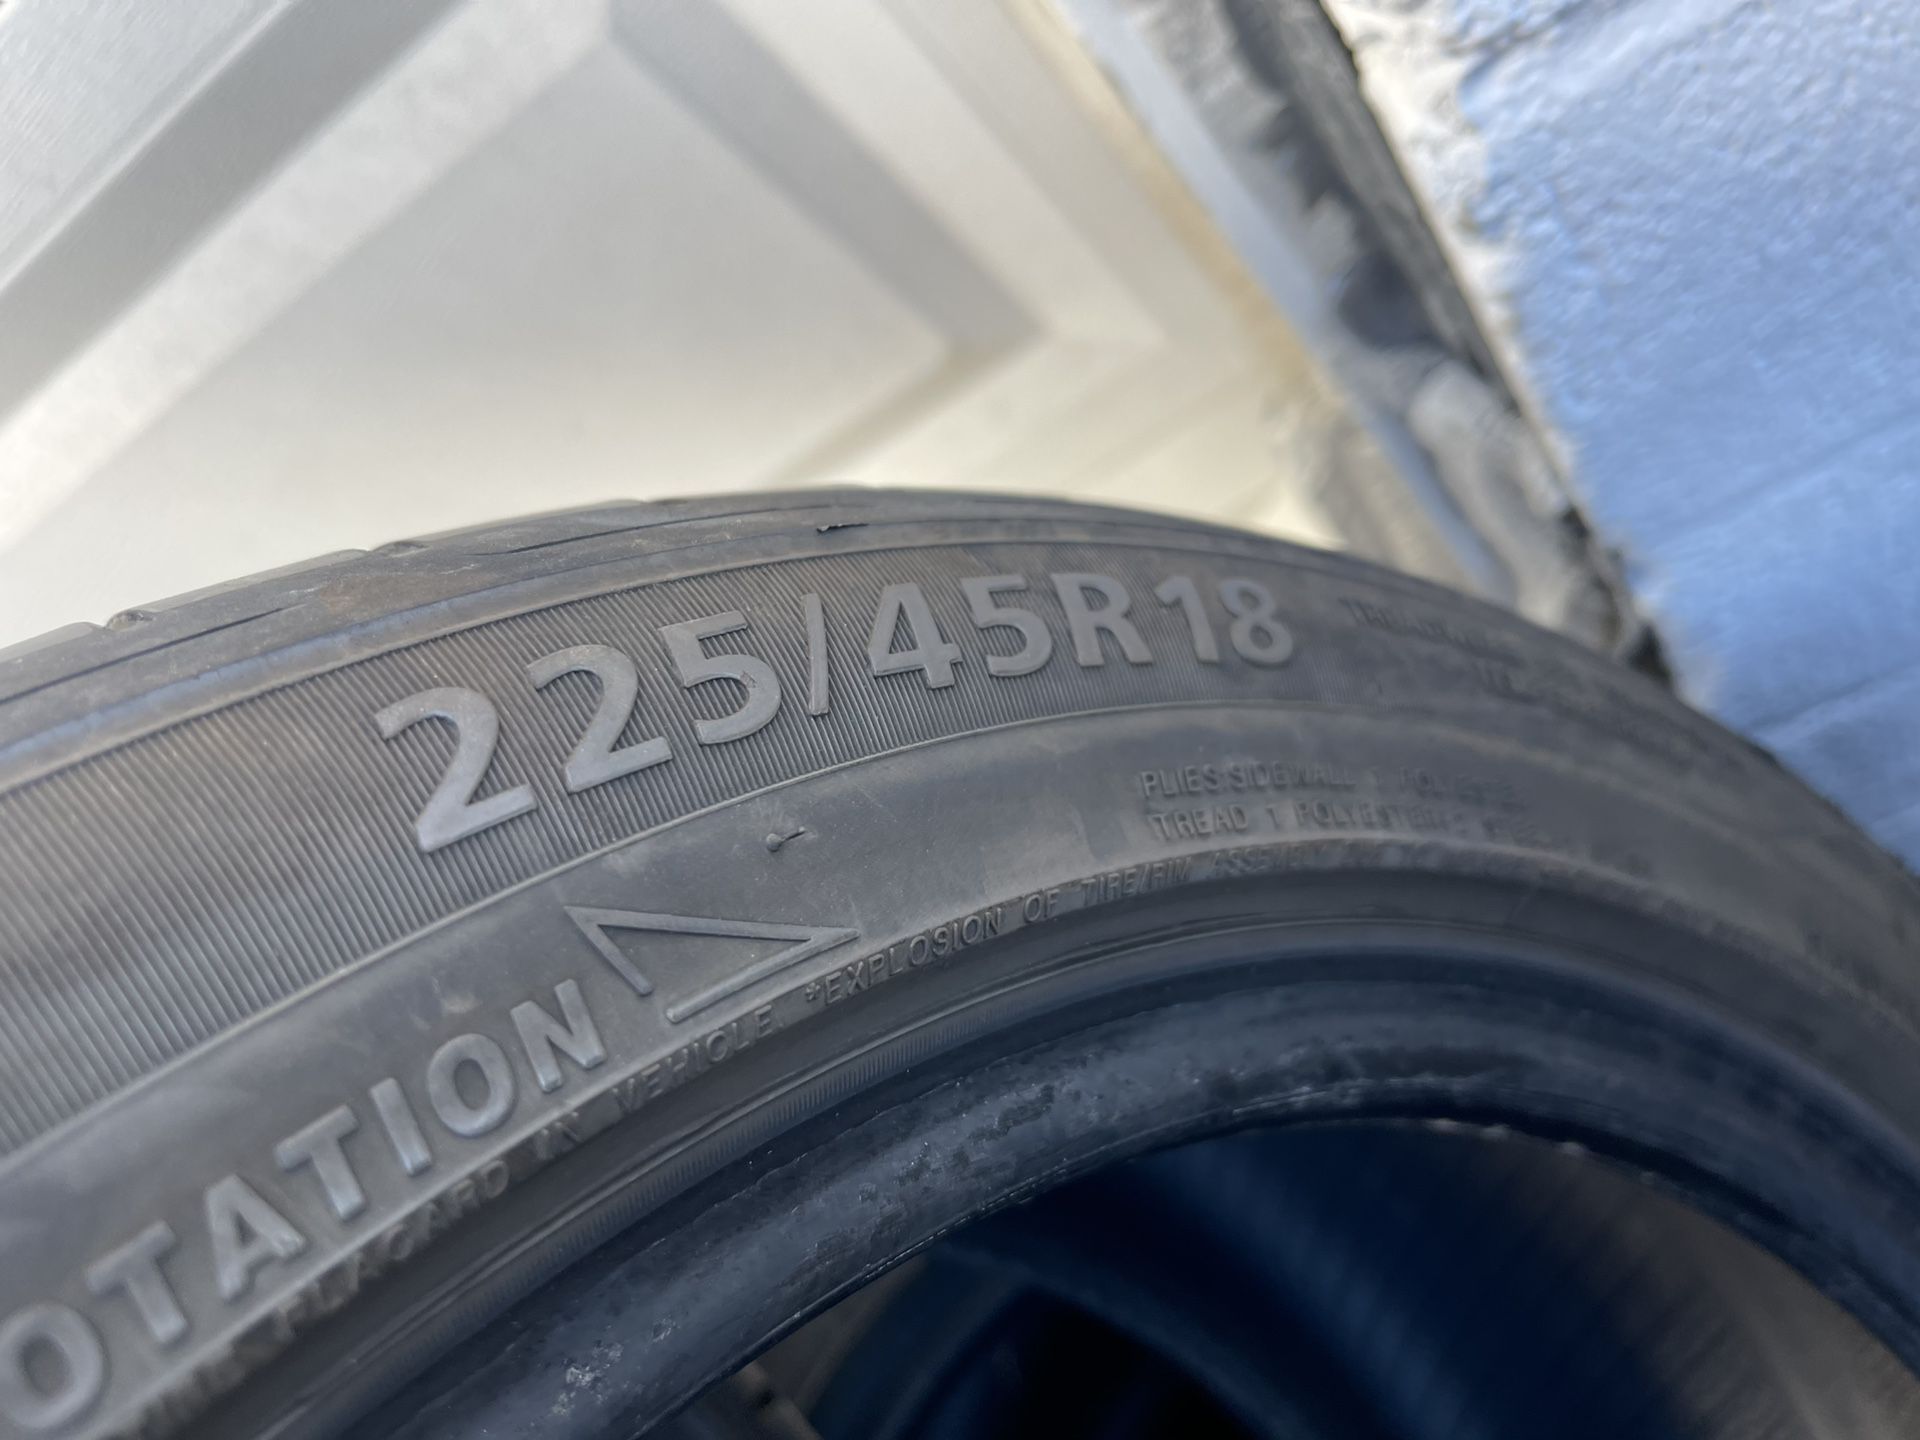 2 Used 225/45/18 ZeTa Tires 